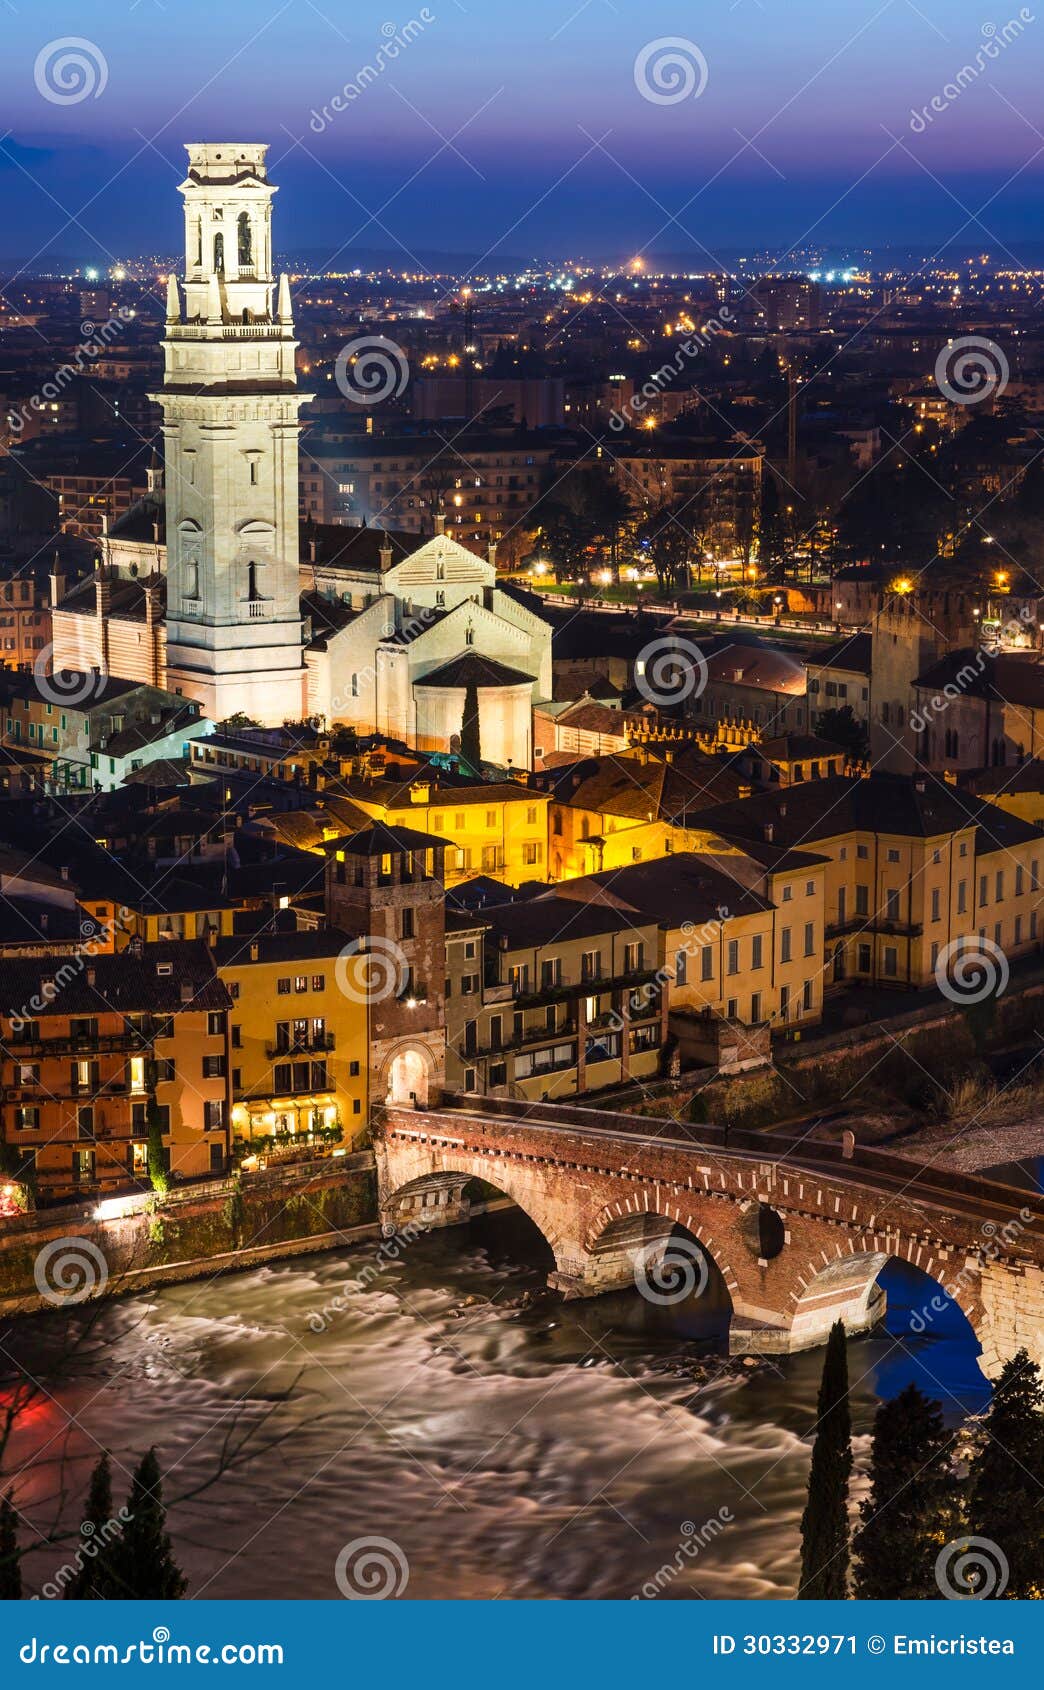 ponte pietra and duomo of verona in night, italy